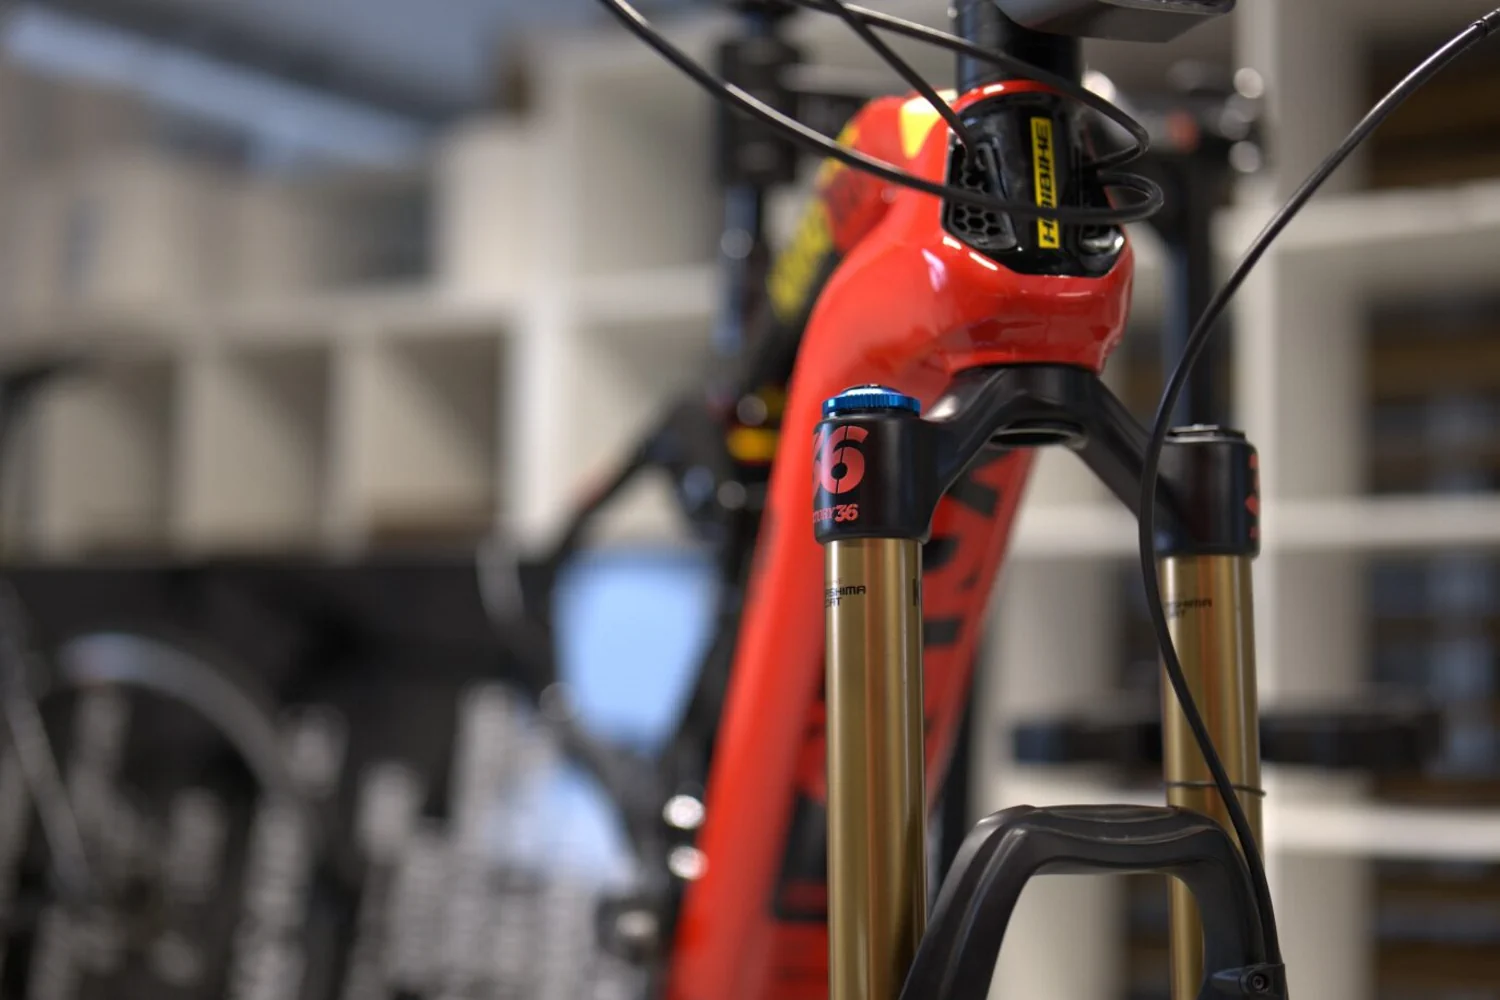 Detal czerwonej ramy roweru Haibike z folią ochronną i widocznym złotym zawieszeniem Fox